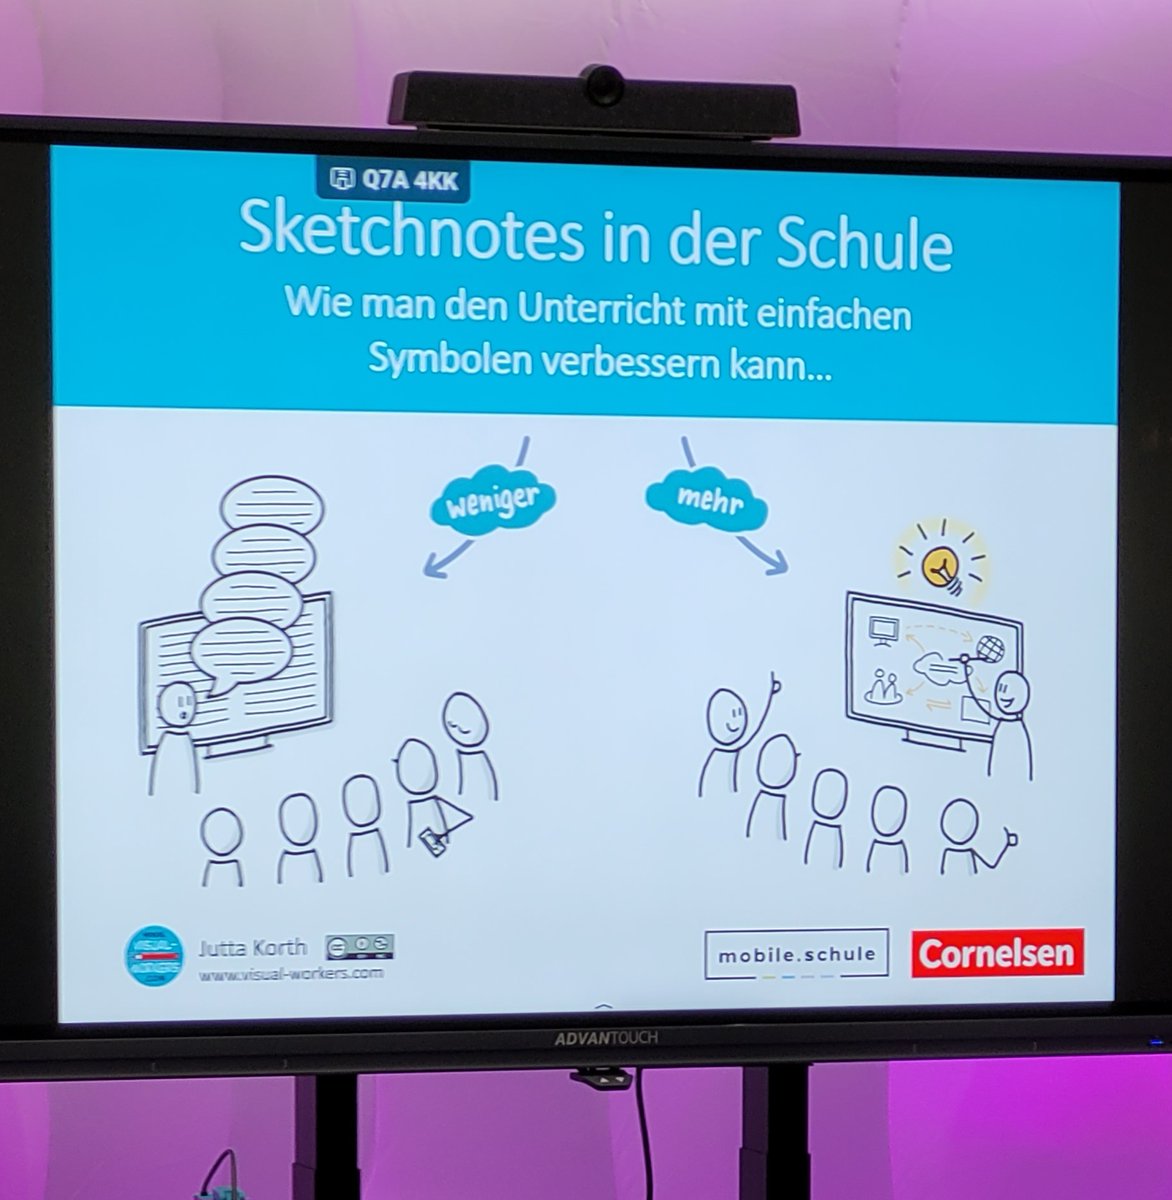 Workshop Nr. 2 bei der @mobileschule Tagung in Hannover im Auftrag von Cornelsen: Sketchnotes in der Schule - wie immer großer Andrang - es war mir eine Freude! Meine Präsentation mit den weiterführenden Links findet ihr hier: drive.google.com/file/d/16YVpDC…… #twlz #molol #molol23